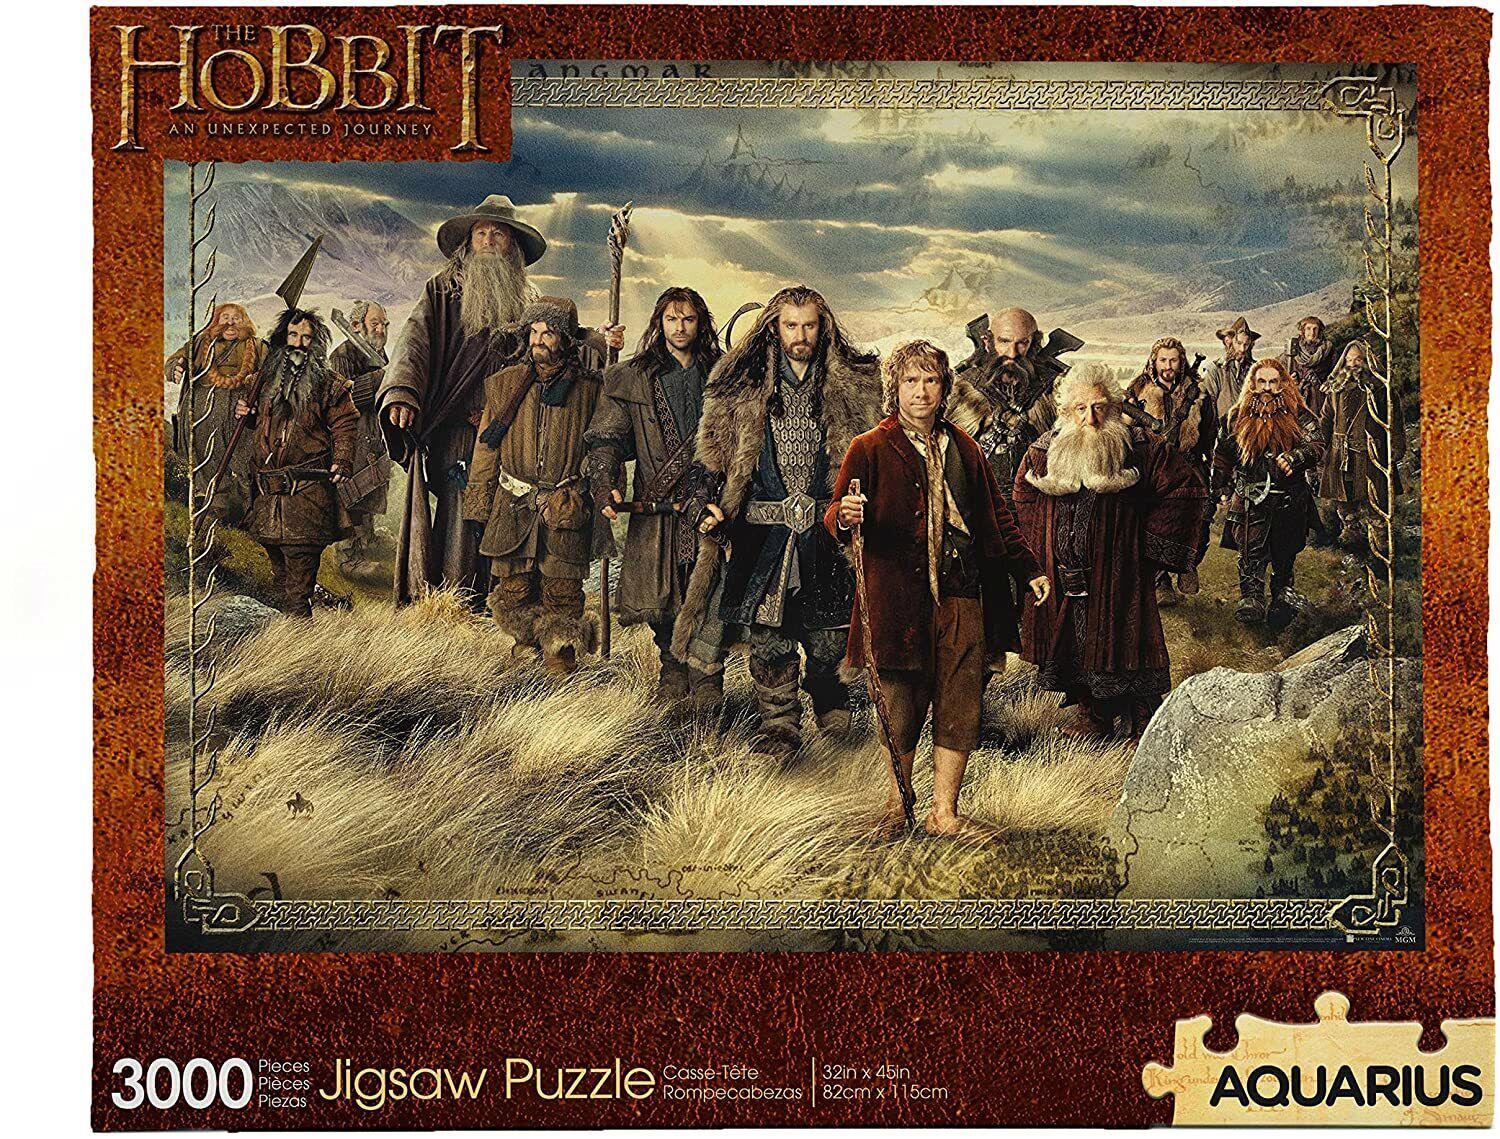 Puzzle Le Hobbit